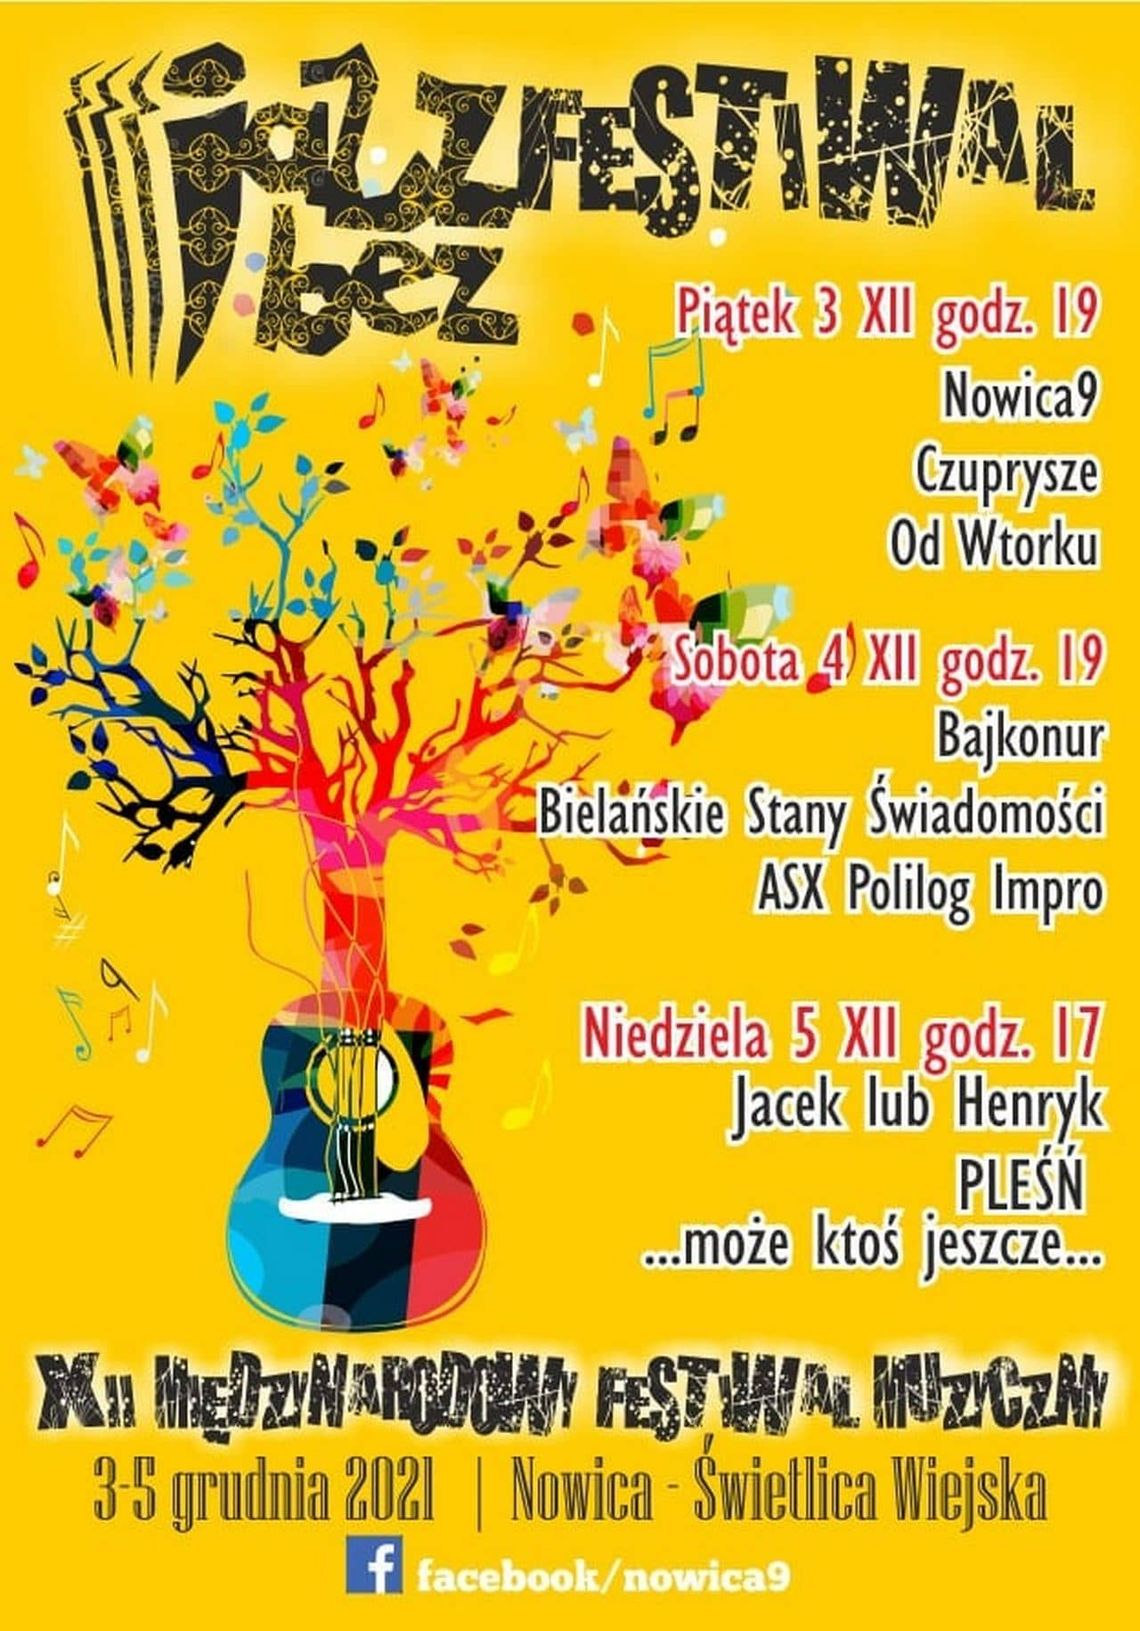 Międzynarodowy Festiwal Muzyczny Jazz Bez w Nowicy [3 – 5 grudnia 2021] | zapowiedzi imprez – halogorlice.info